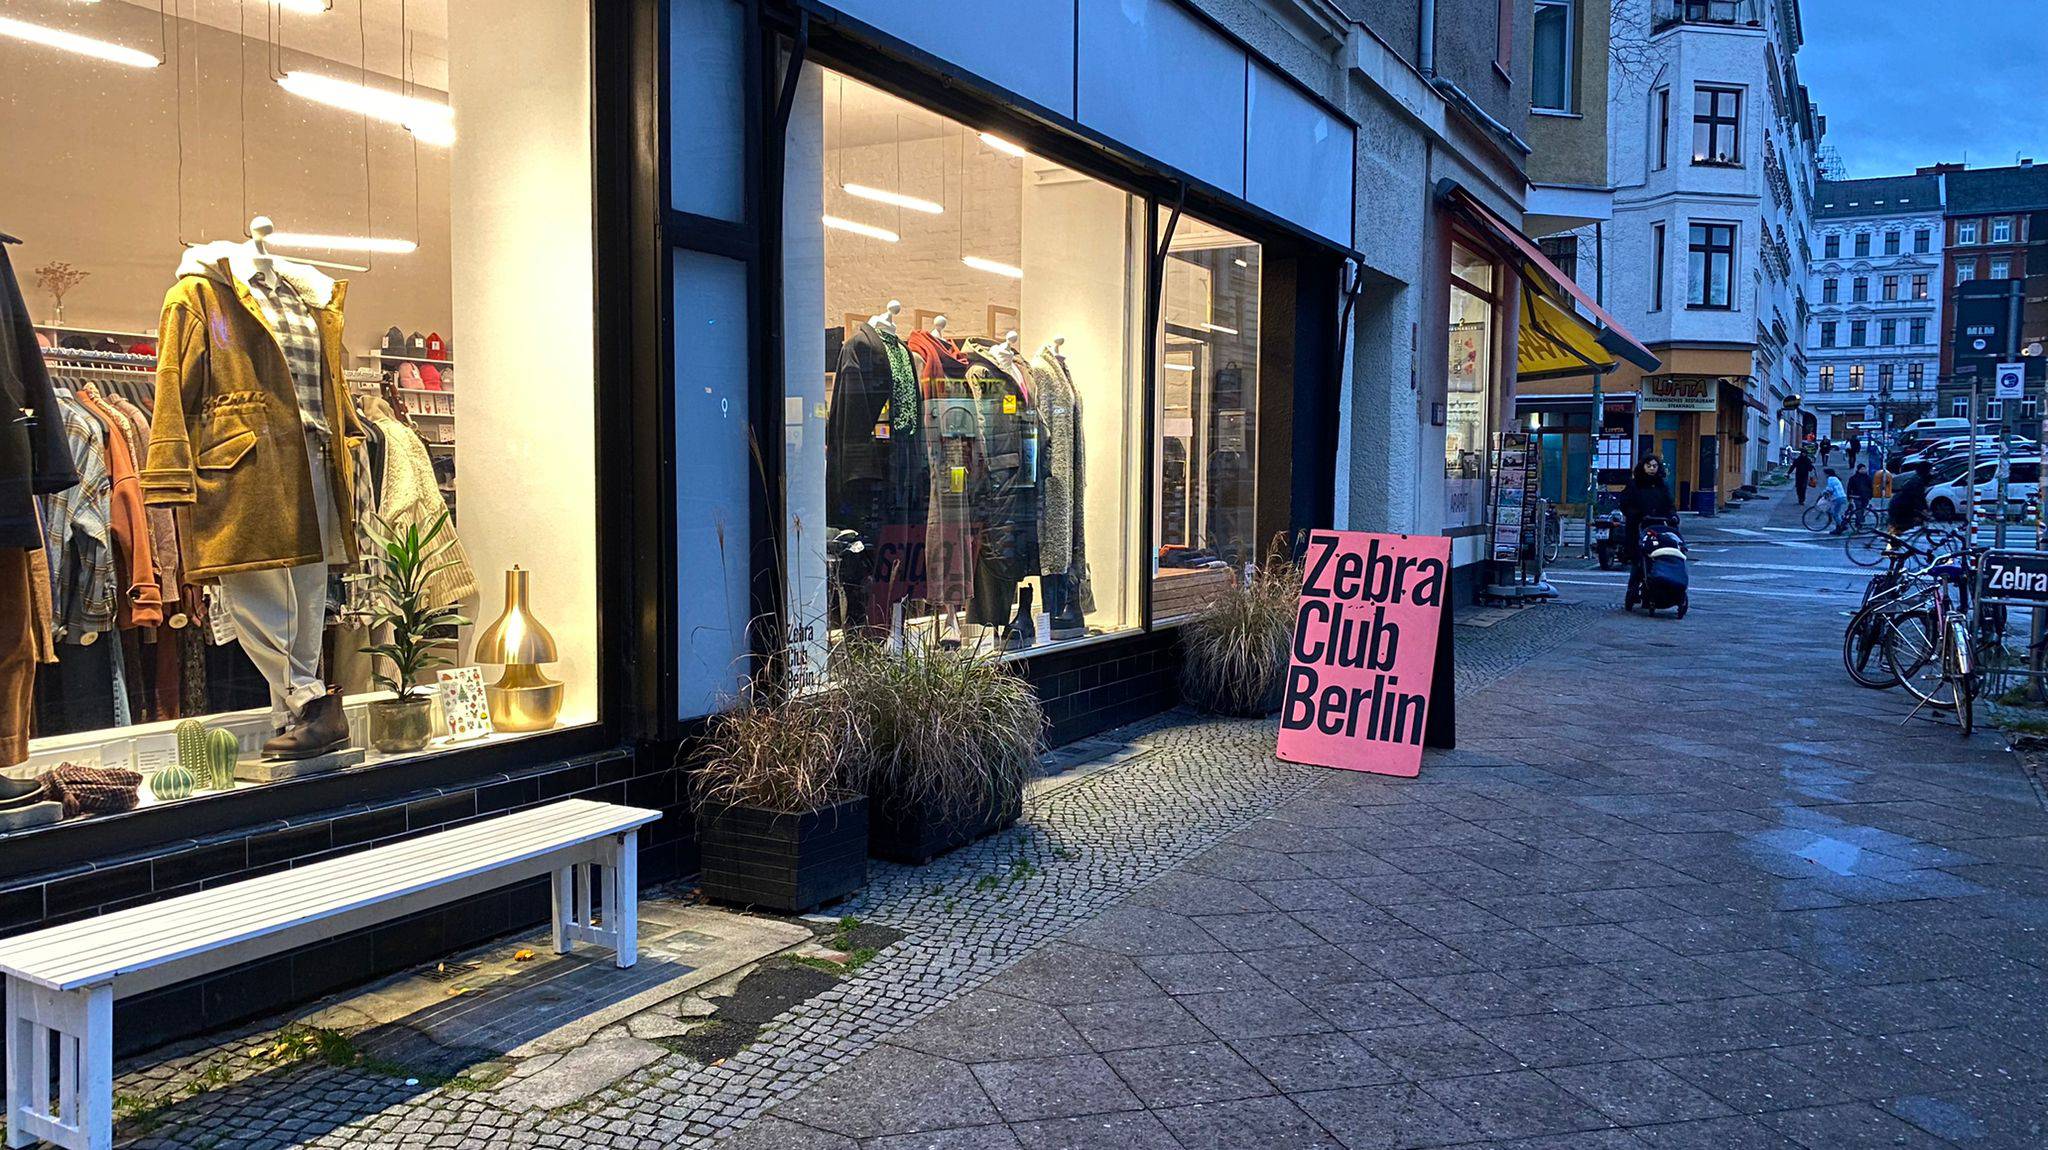 Winterkleidung shoppen in Berlin Der Zebra Club betreibt zwei Filialen, die beide im Kreuzberger Bergmannkiez liegen. Die Auswahl an Damen- und Herrenmode hier ist modern und vielseitig.